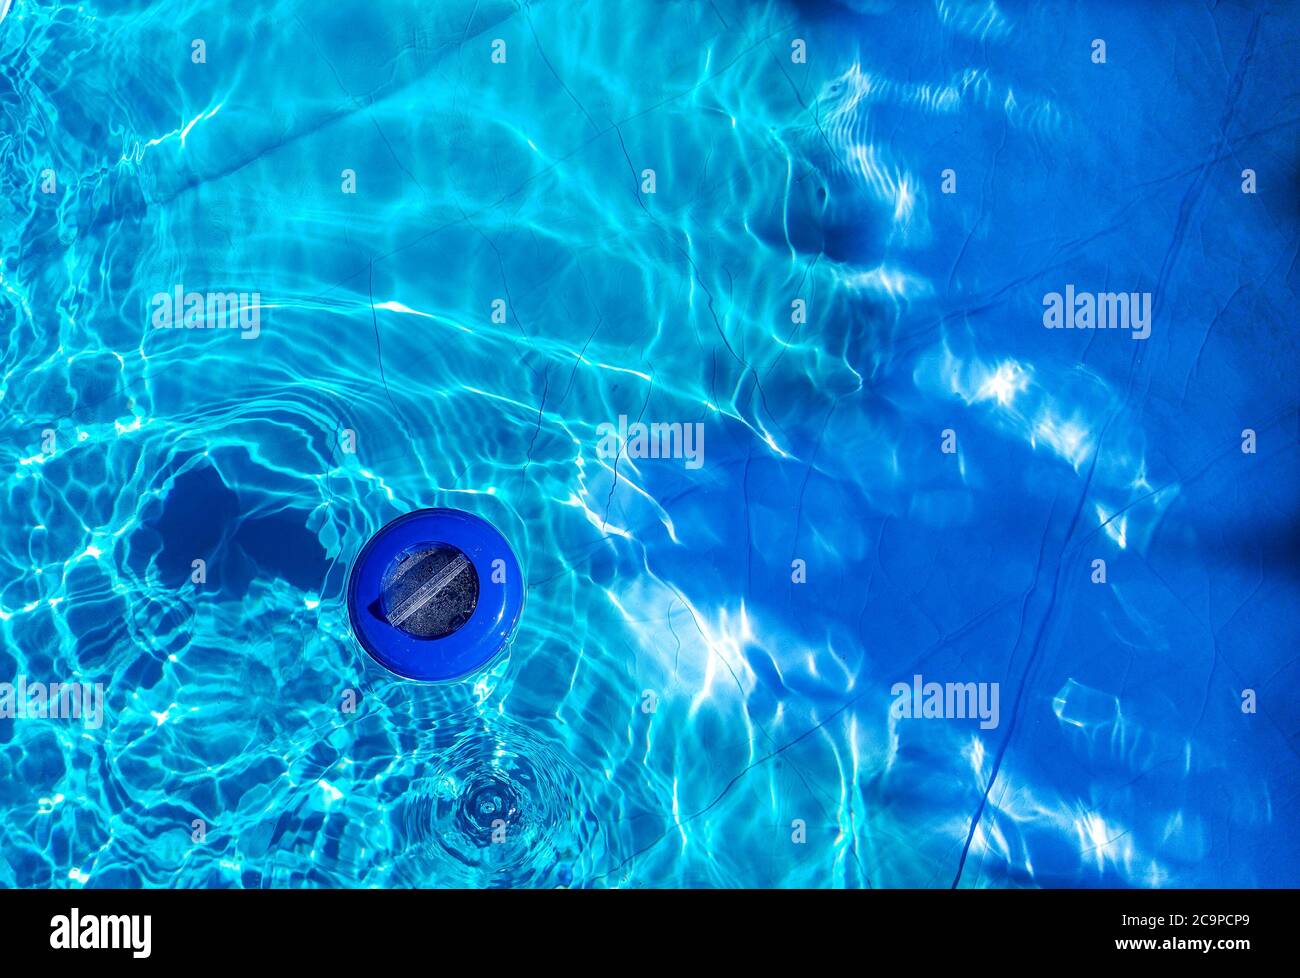 Schwimmende Kunststoff-Chlorspender und blaues Wasser von oben gesehen. Chlorspender wird verwendet, um das Schwimmbad zu desinfizieren Stockfoto